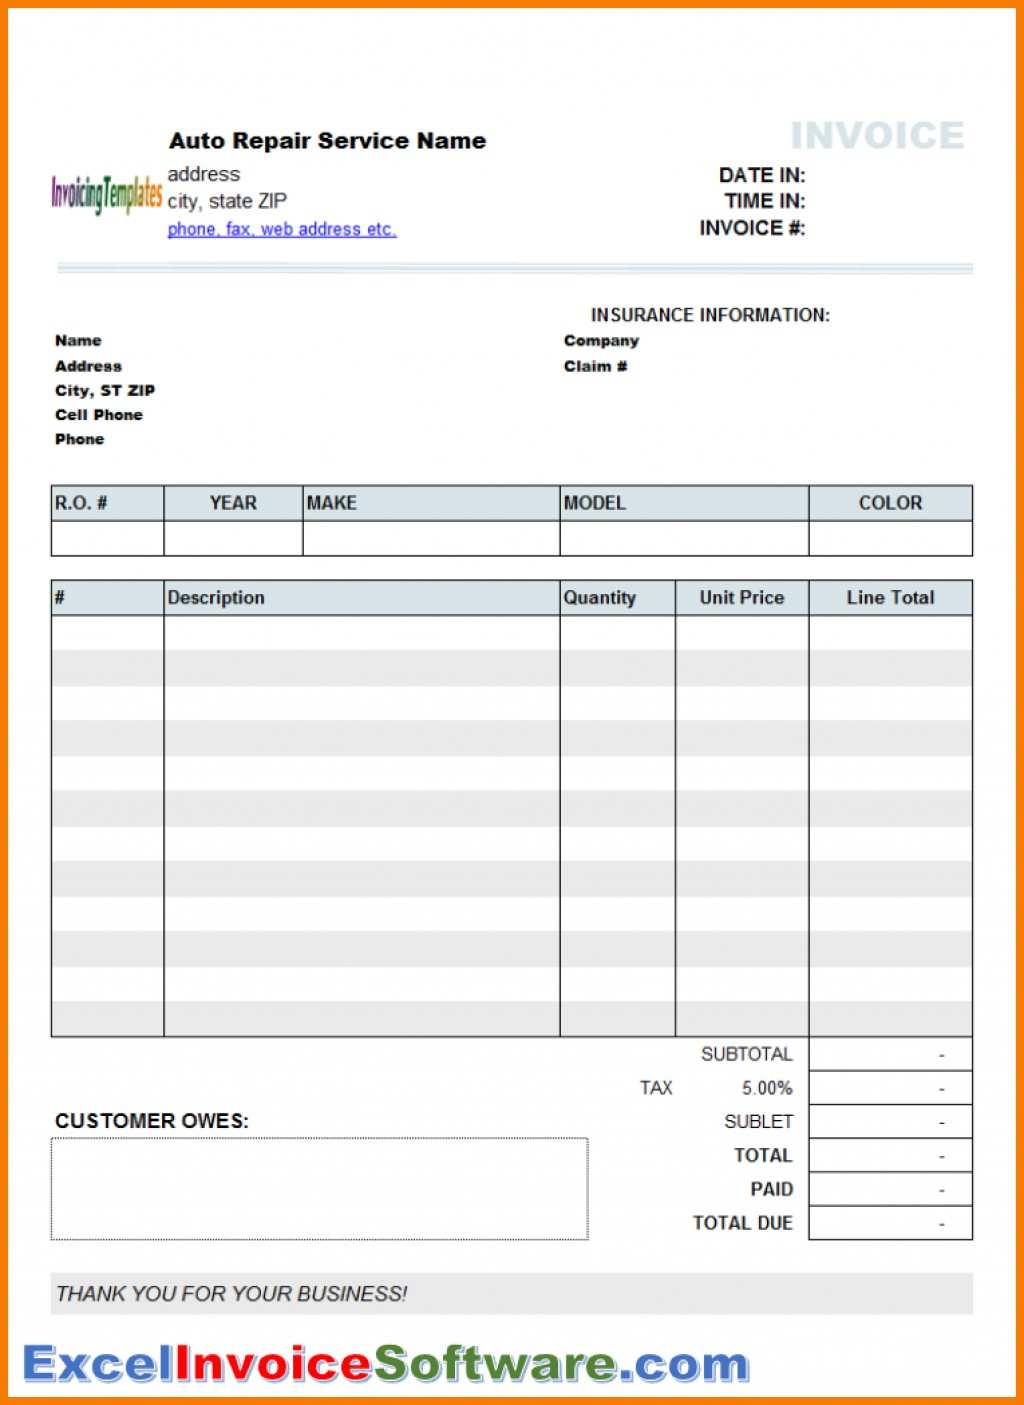 82 Online Auto Repair Invoice Template Quickbooks in Photoshop by Auto Repair Invoice Template Quickbooks